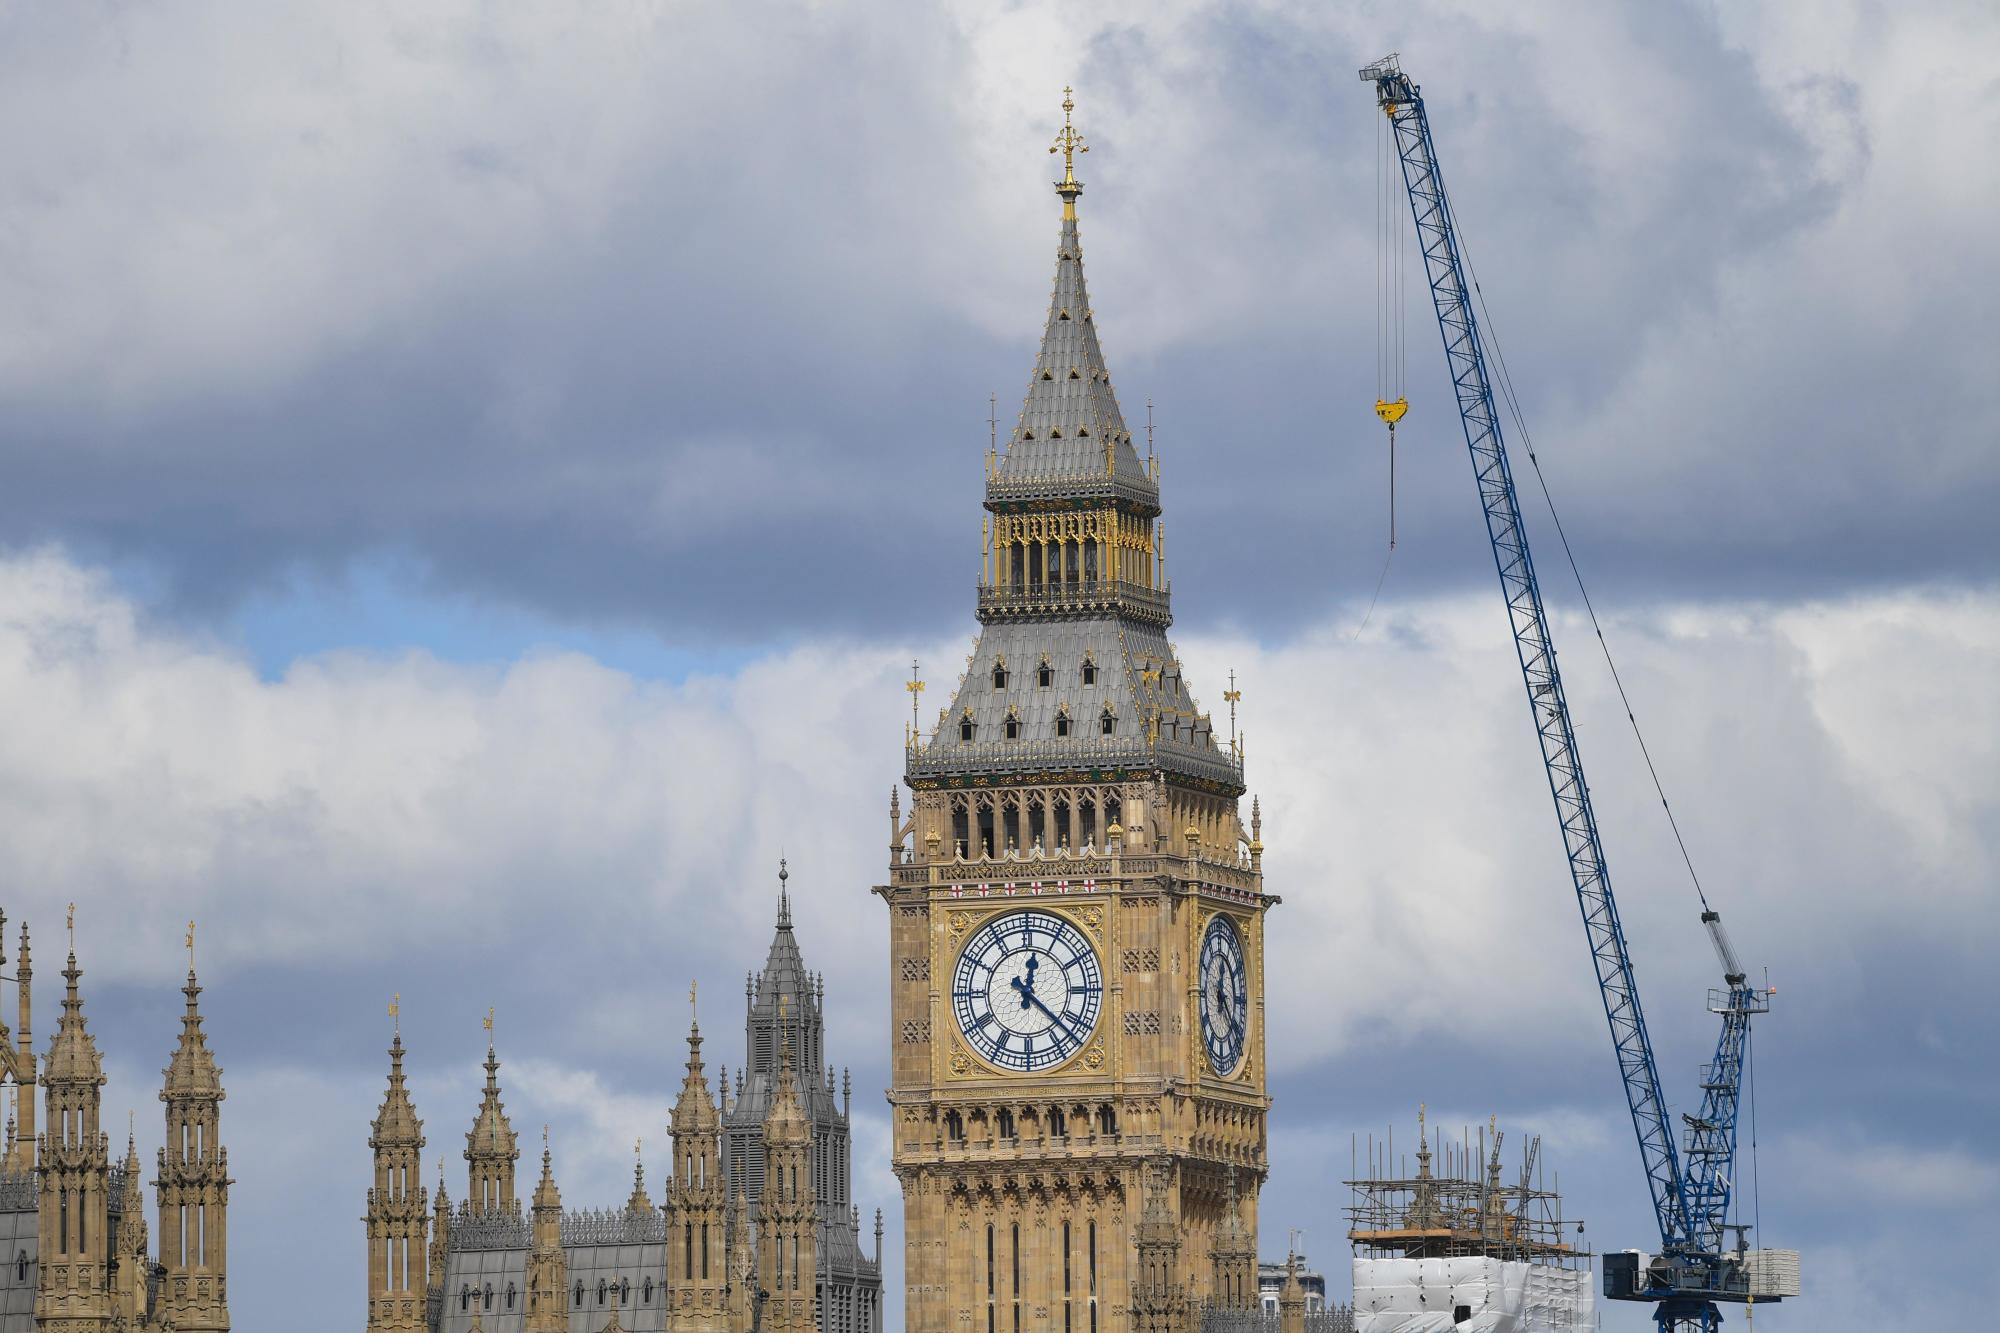 Big Ben’s Refurbishment Continues – Clock Dials Now Visible